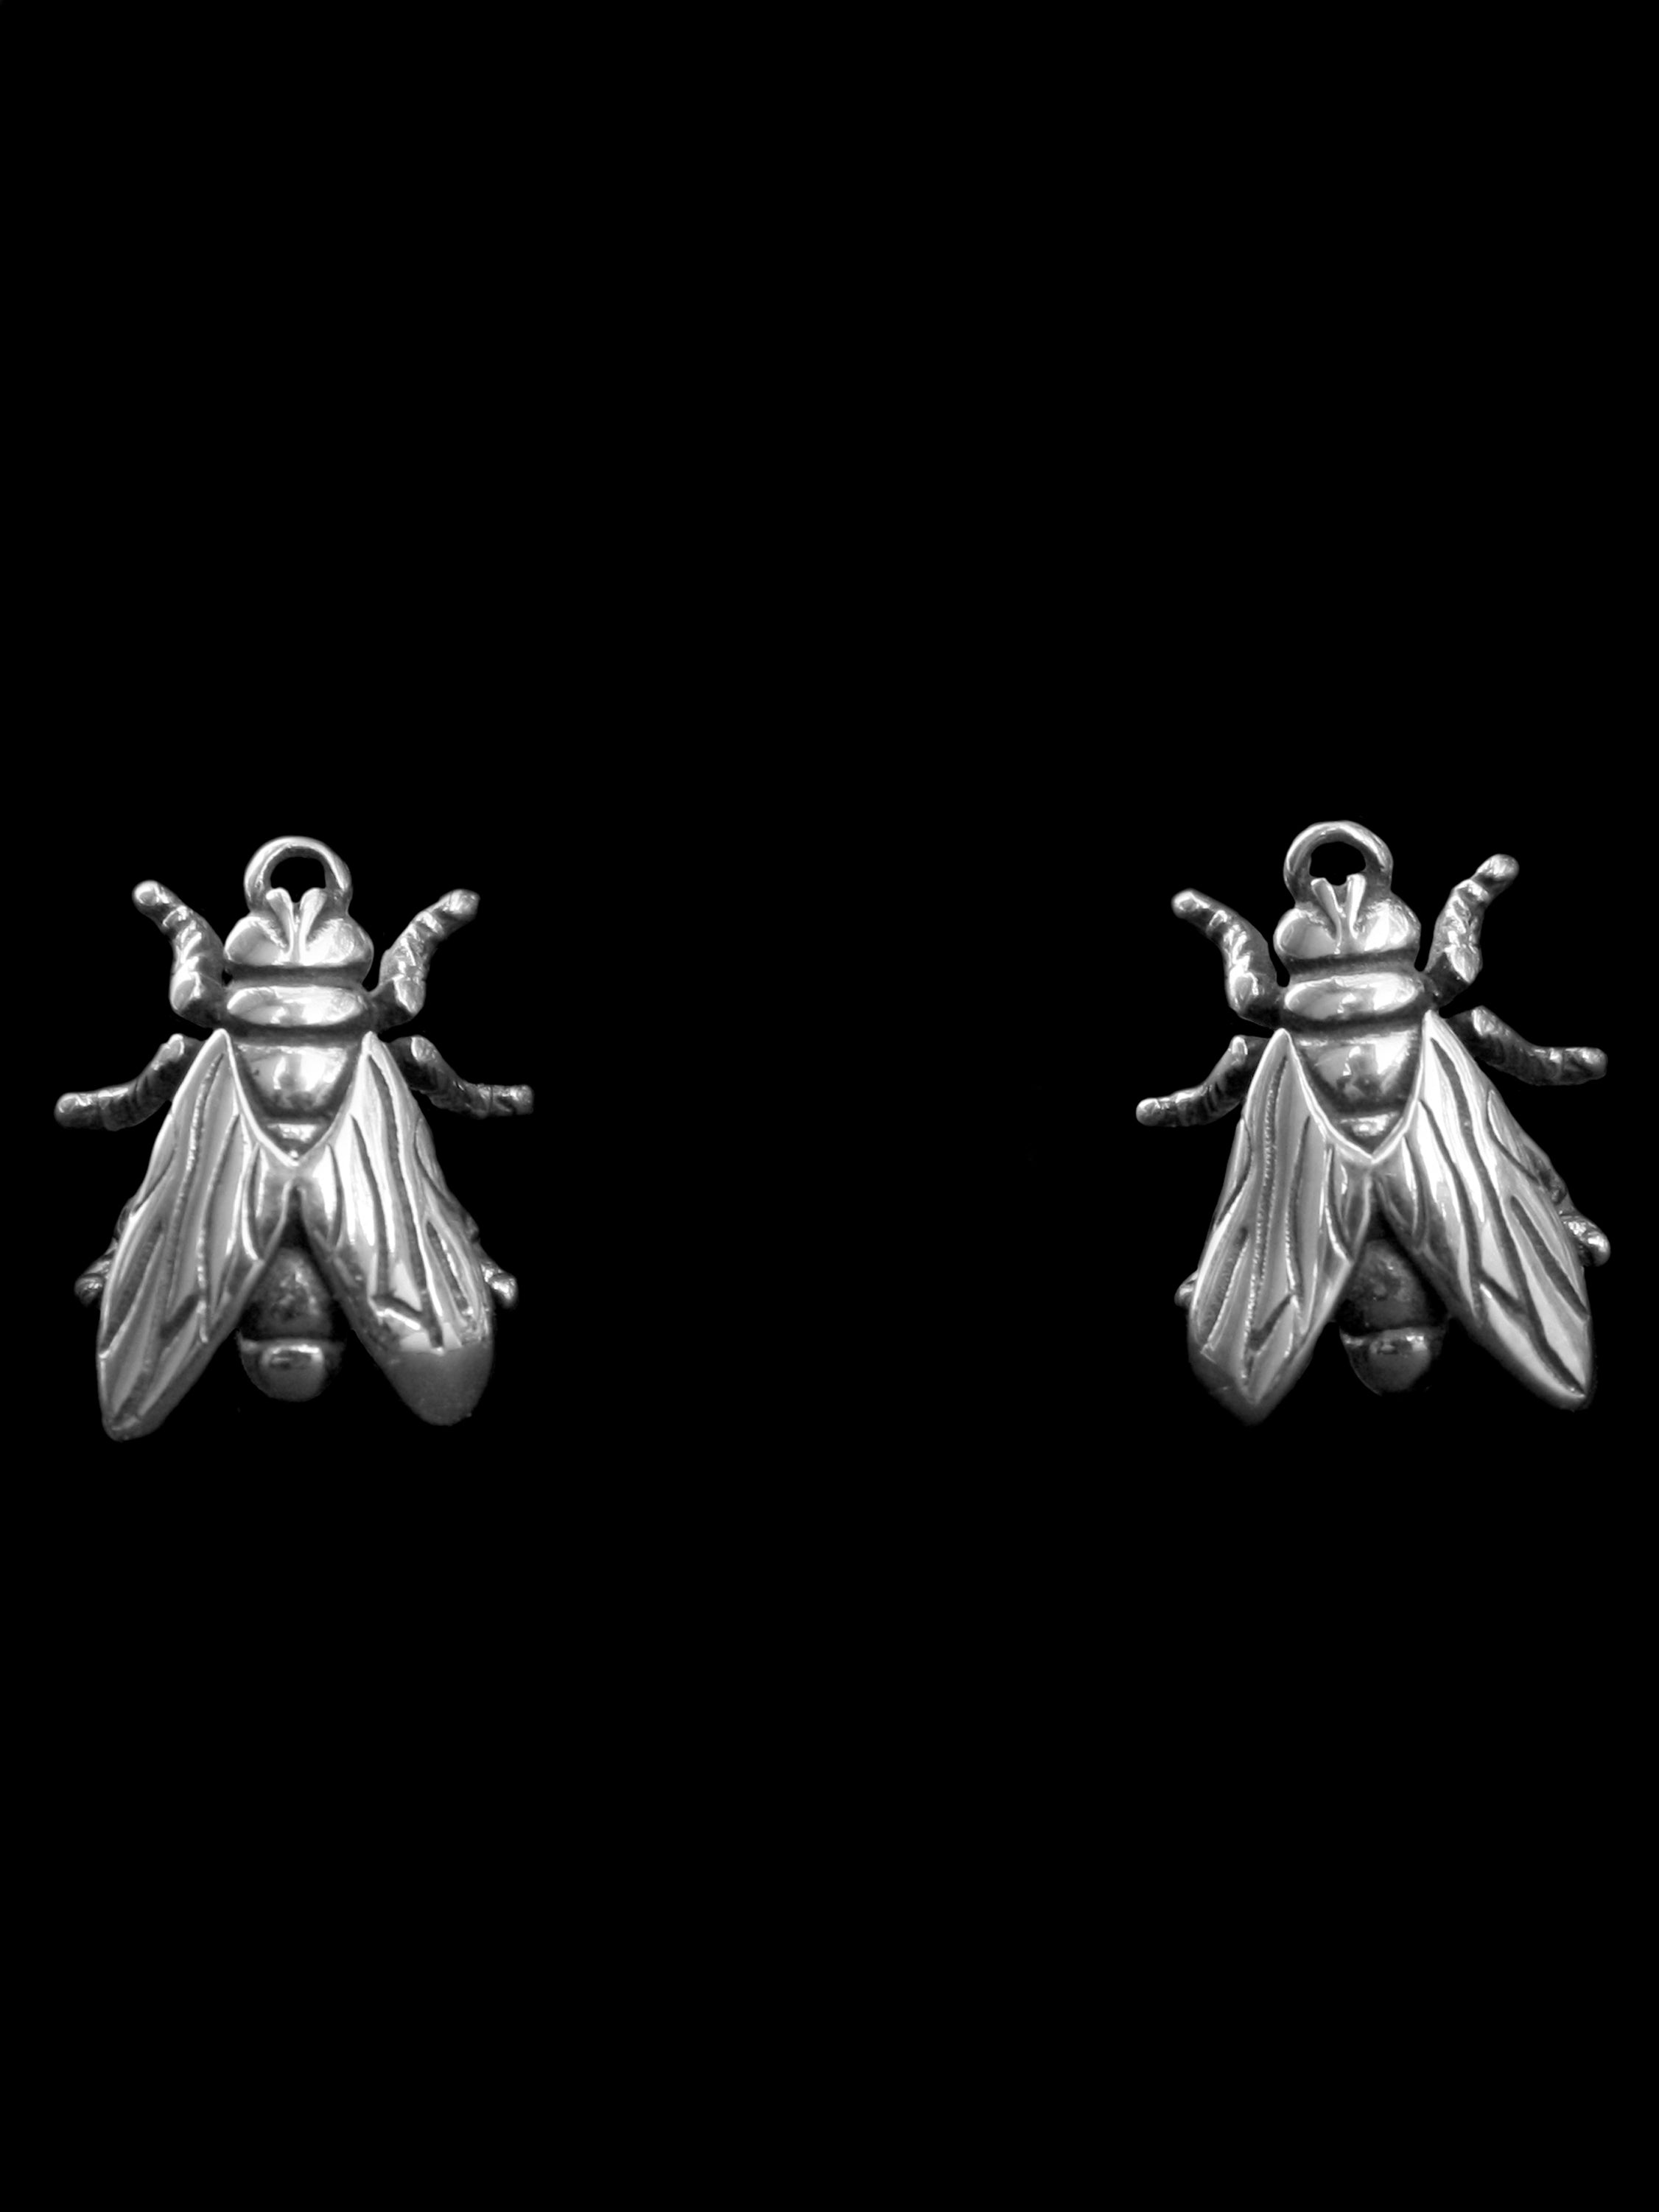 I'm A Bug Earrings – Lesser of 2 Evils